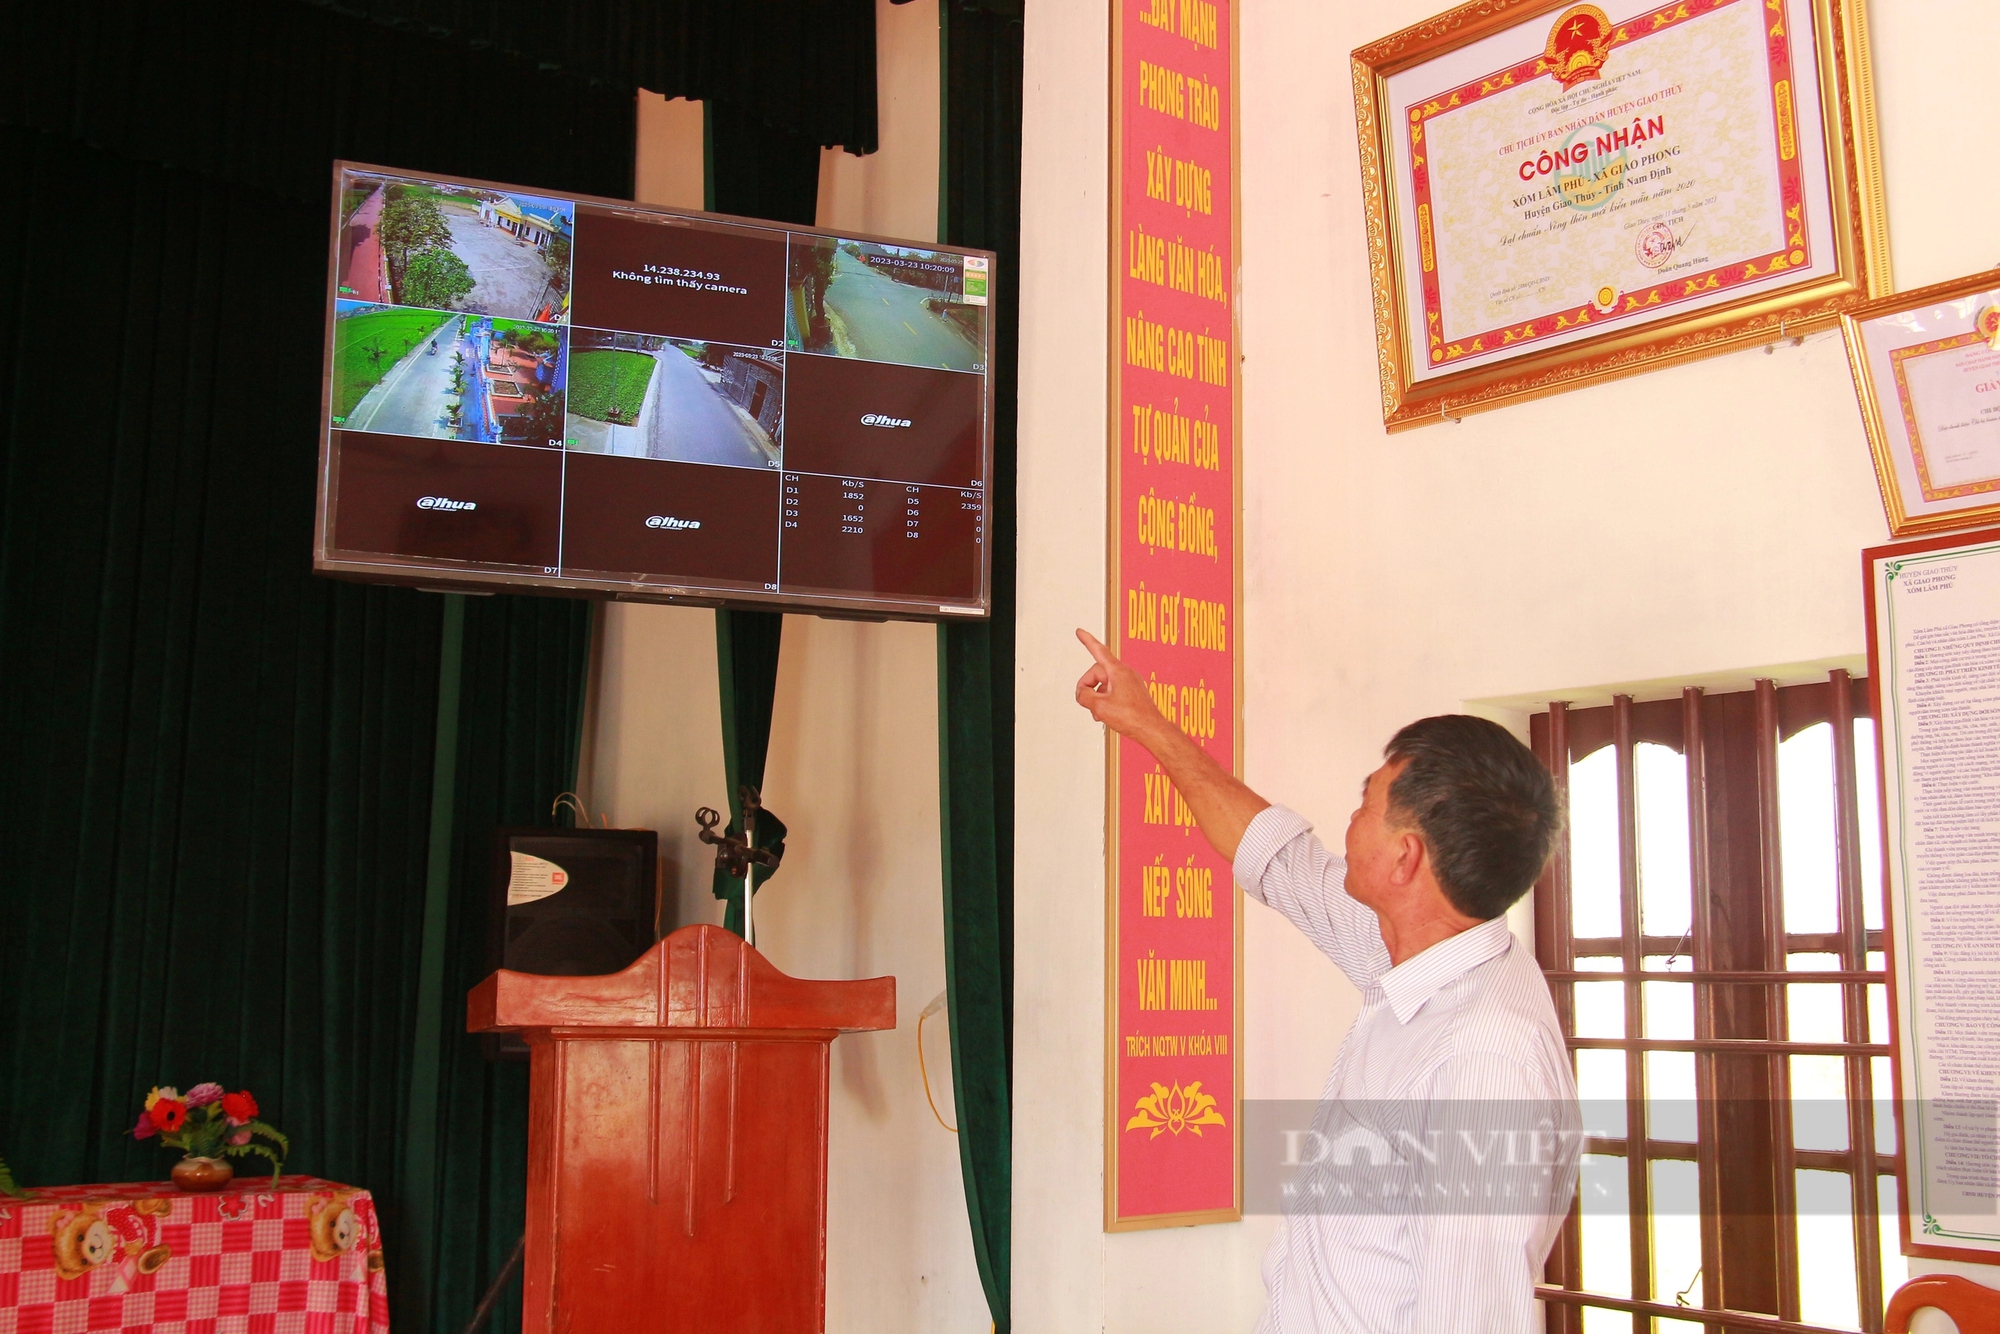 Xã kiểu mẫu đầu tiên của tỉnh Nam Định được đầu tư 11 tỷ đồng để xây dựng thành xã thông minh - Ảnh 1.